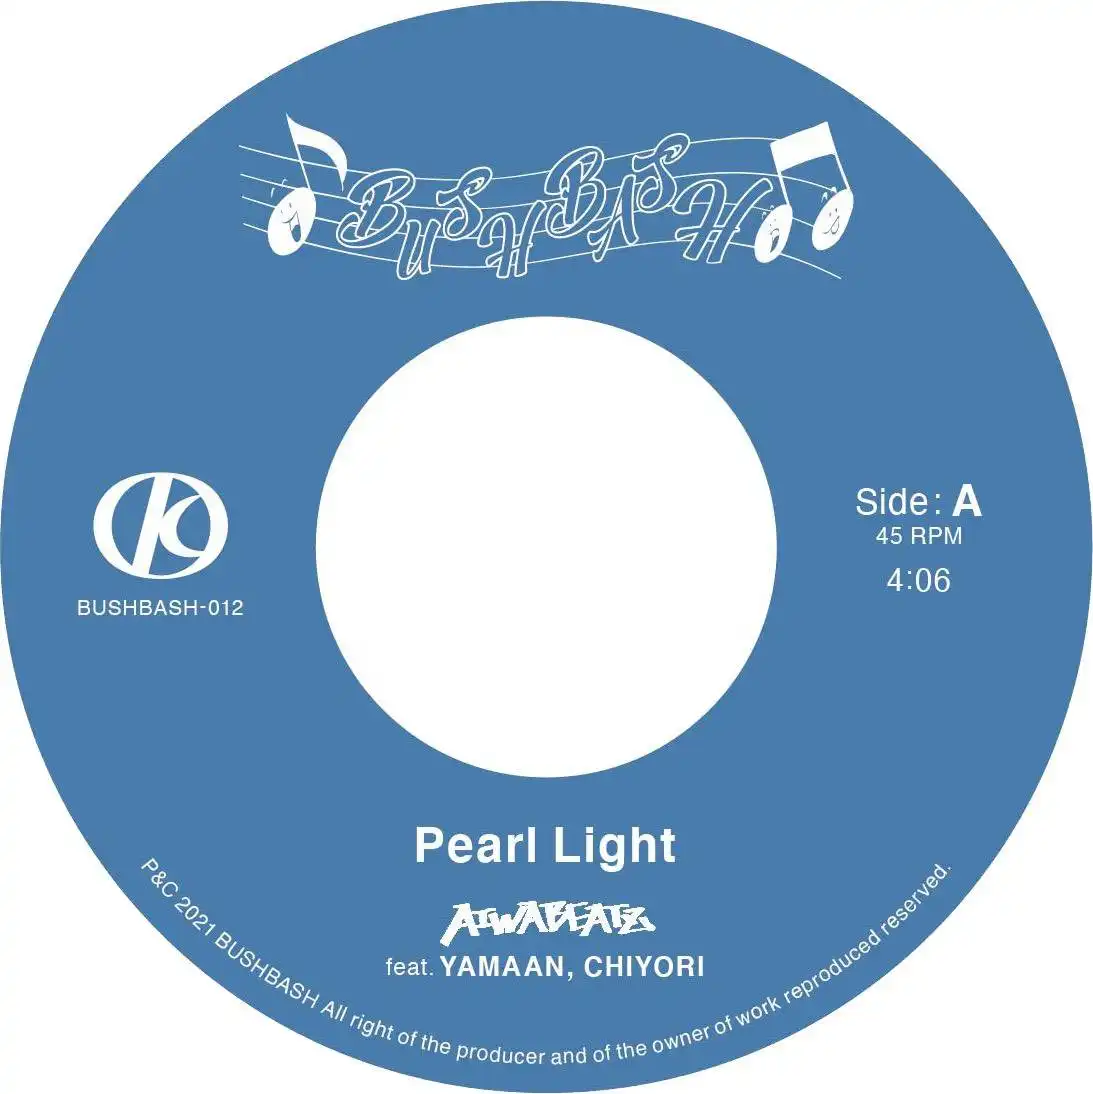 AIWABEATZ / PEARL LIGHT